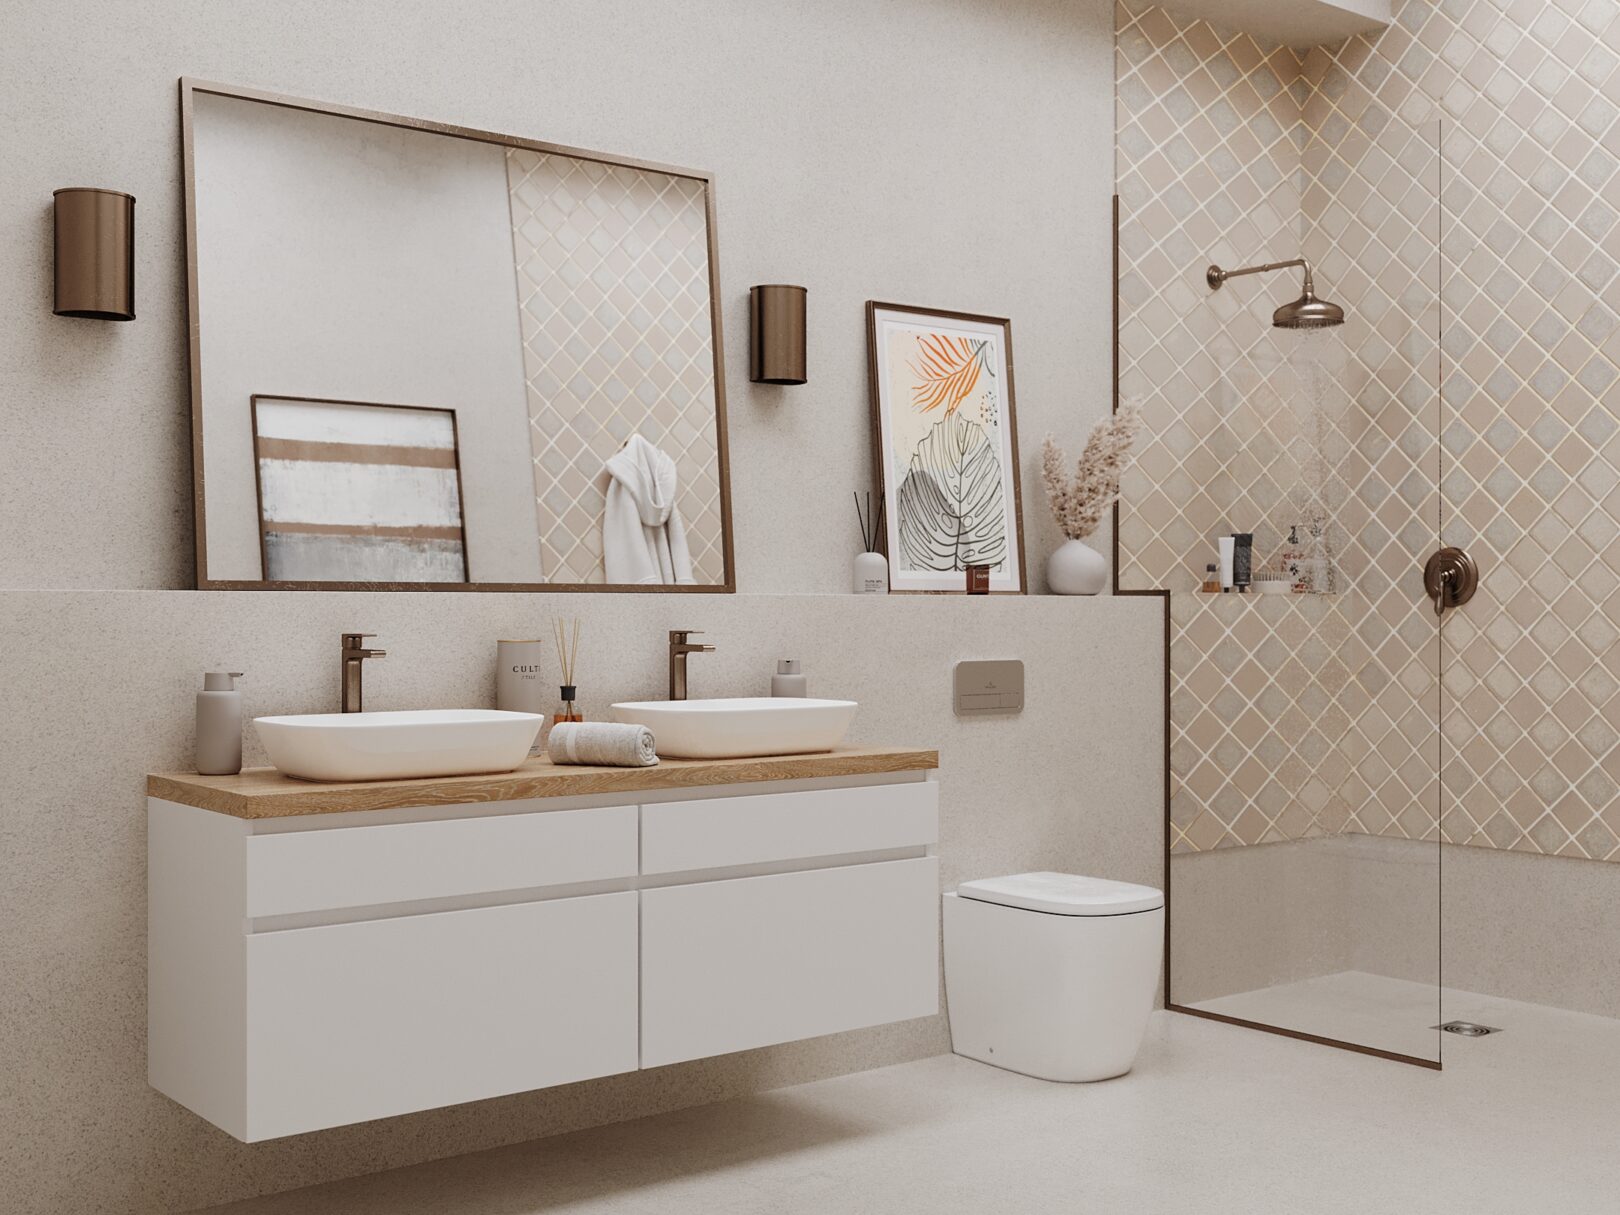 Eichen waschtischplatten kombiniert mit eleganten waschbeckenunterschränken ergänzen den stil des modern living